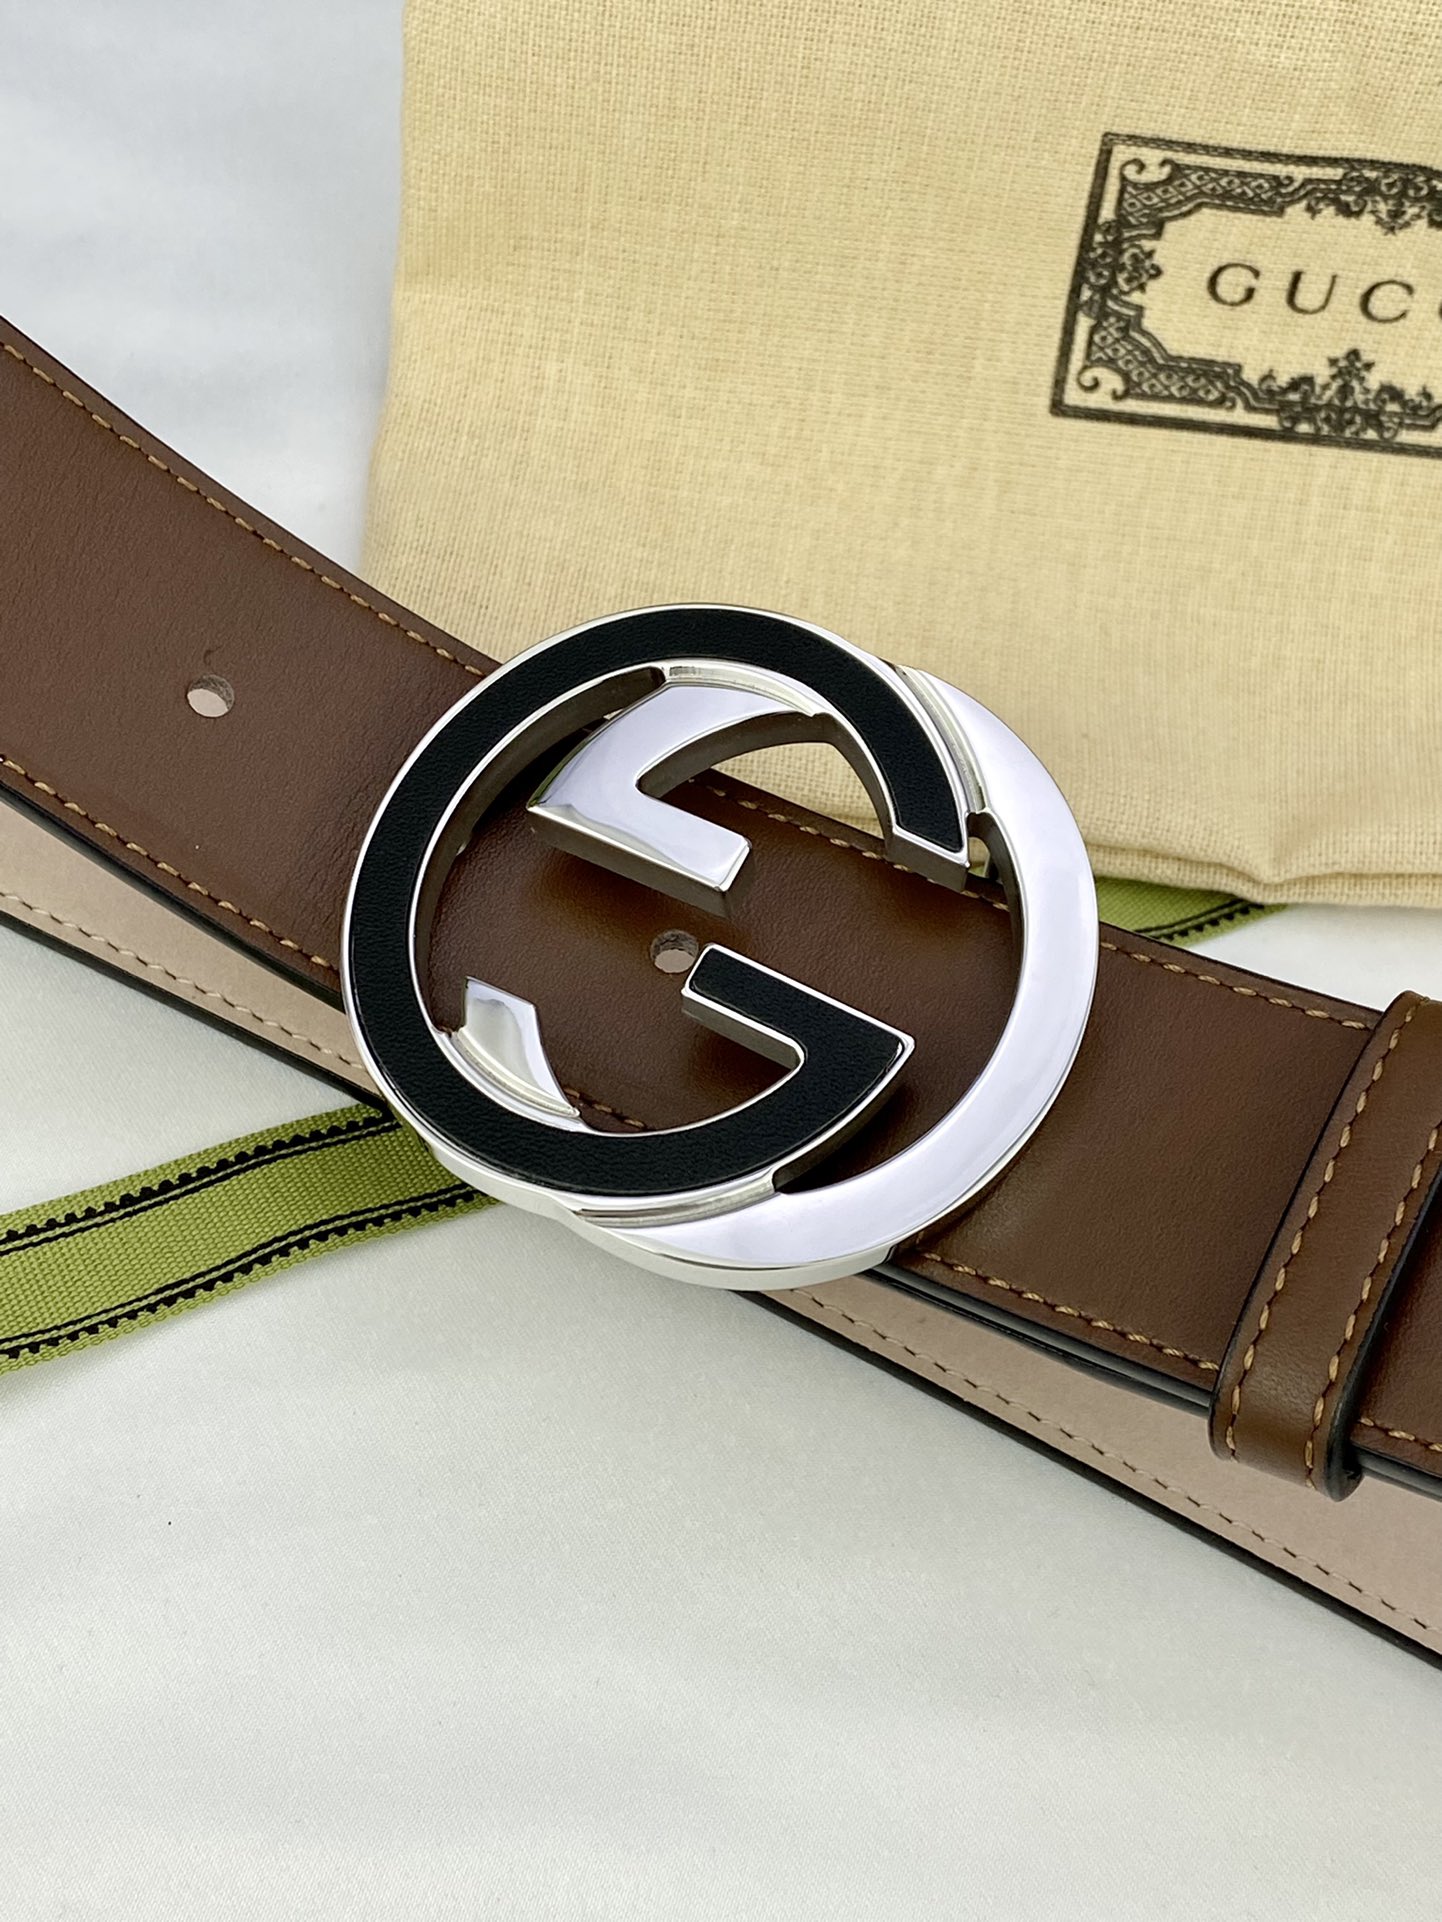 宽度4.0cmgucci这款腰带在季节早秋系列中惊艳亮相采用以标志性米色/乌木色组合呈现的品牌双G字母交